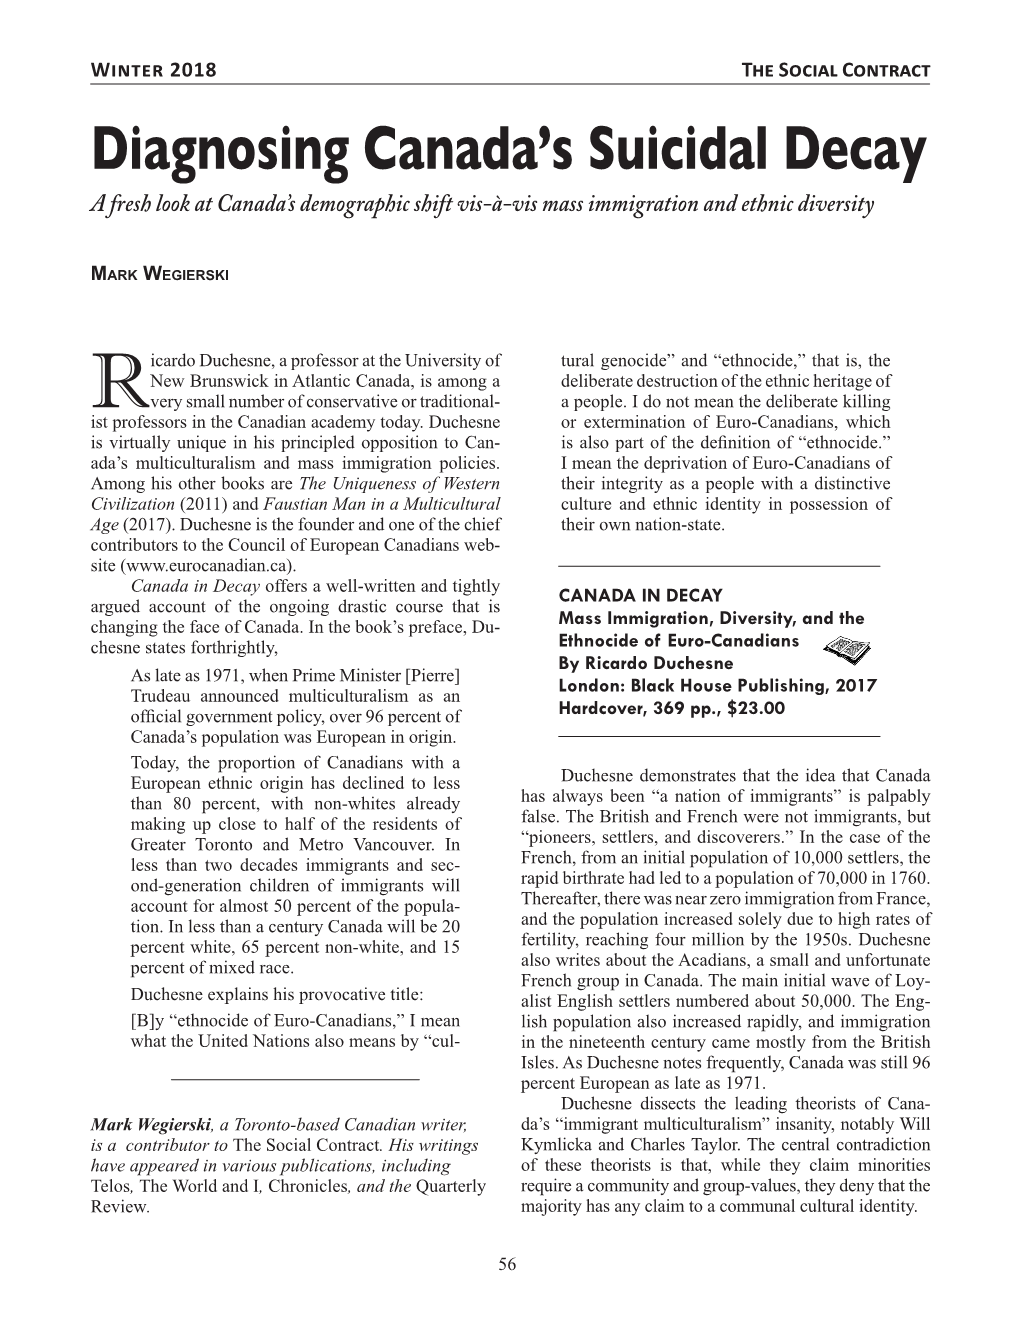 Diagnosing Canada's Suicidal Decay